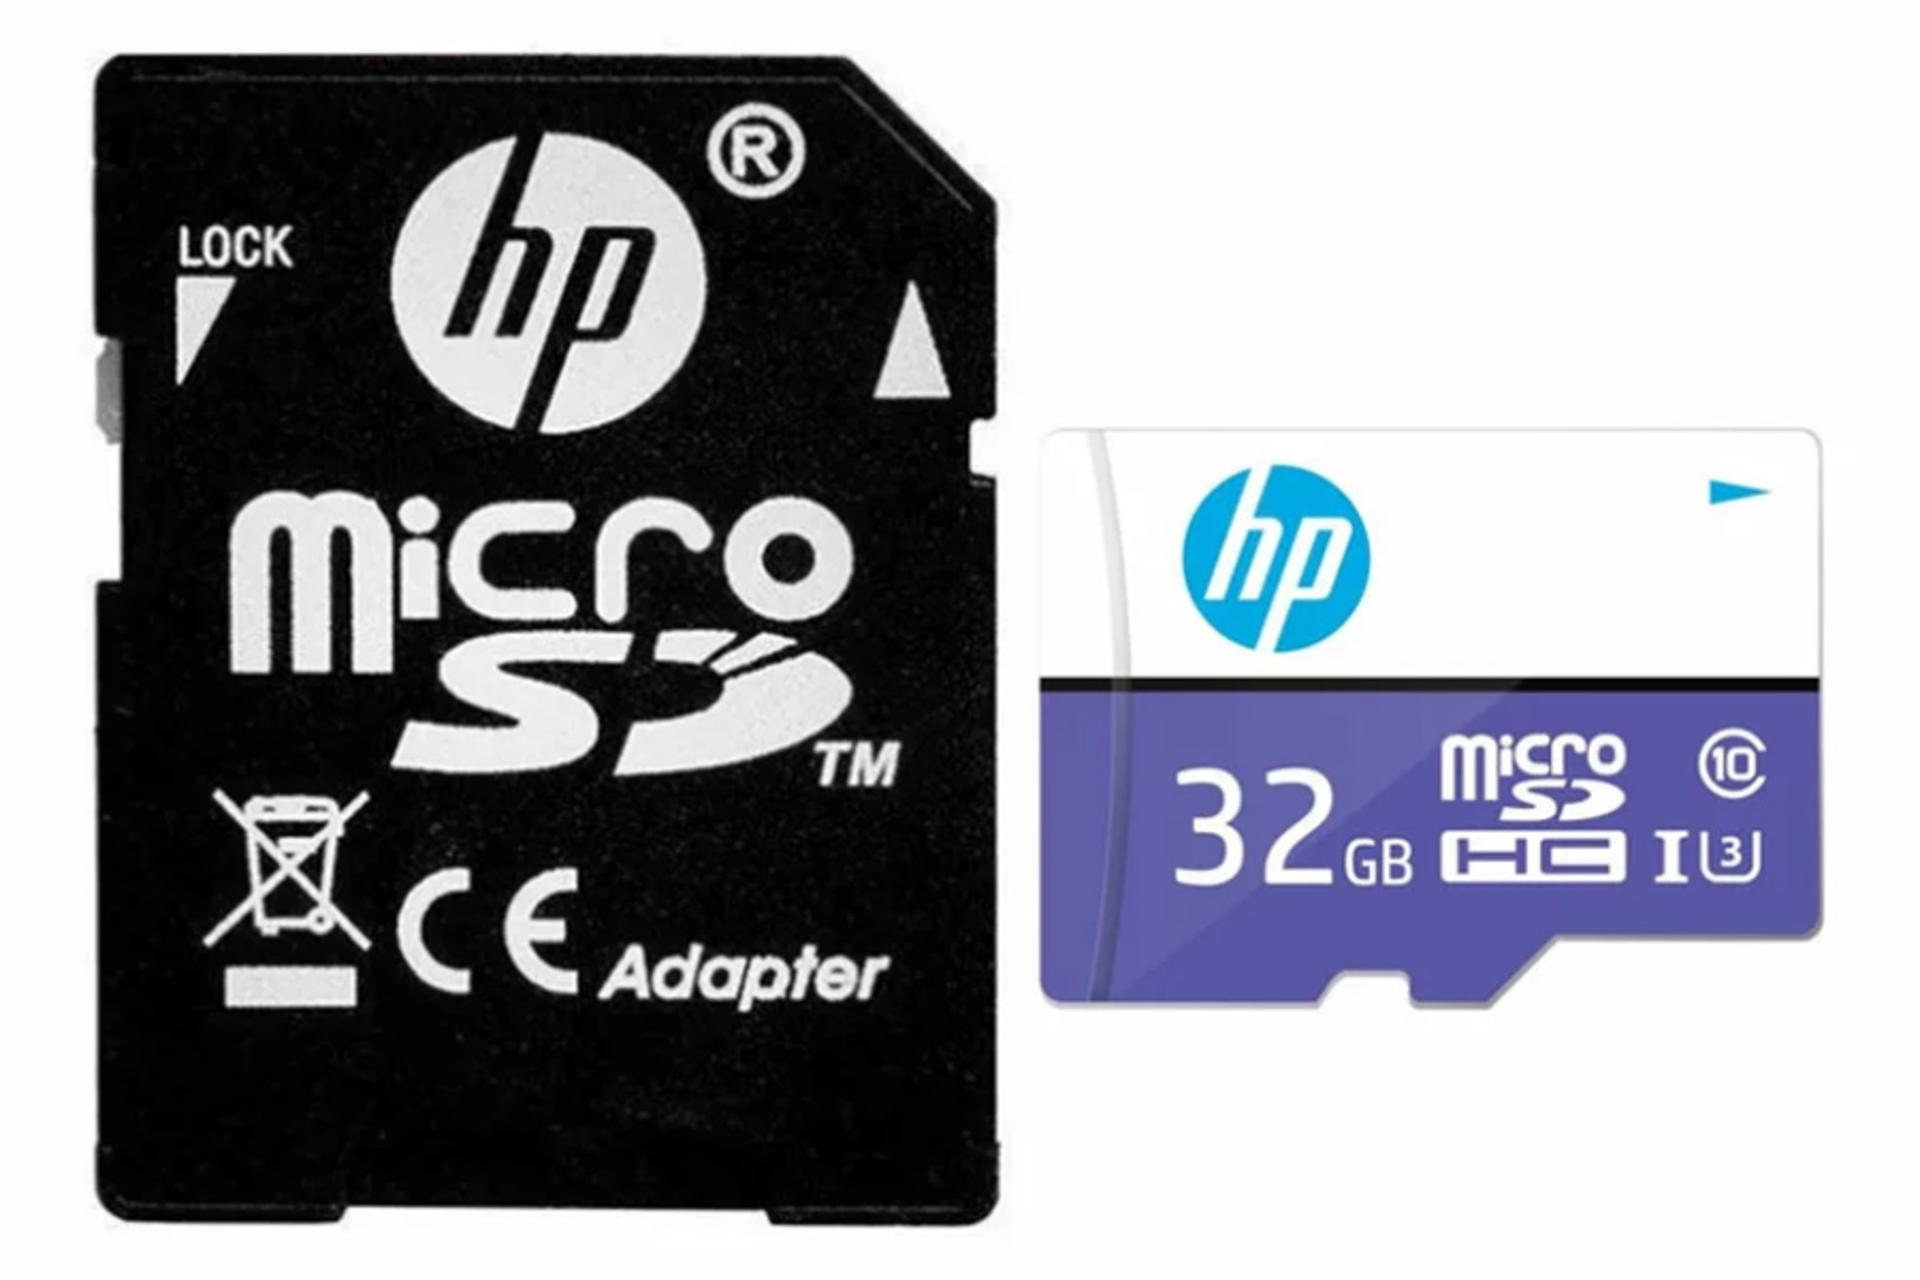 کارت حافظه اچ پی microSDHC با ظرفیت 32 گیگابایت مدل Mi230 همراه آداپتور